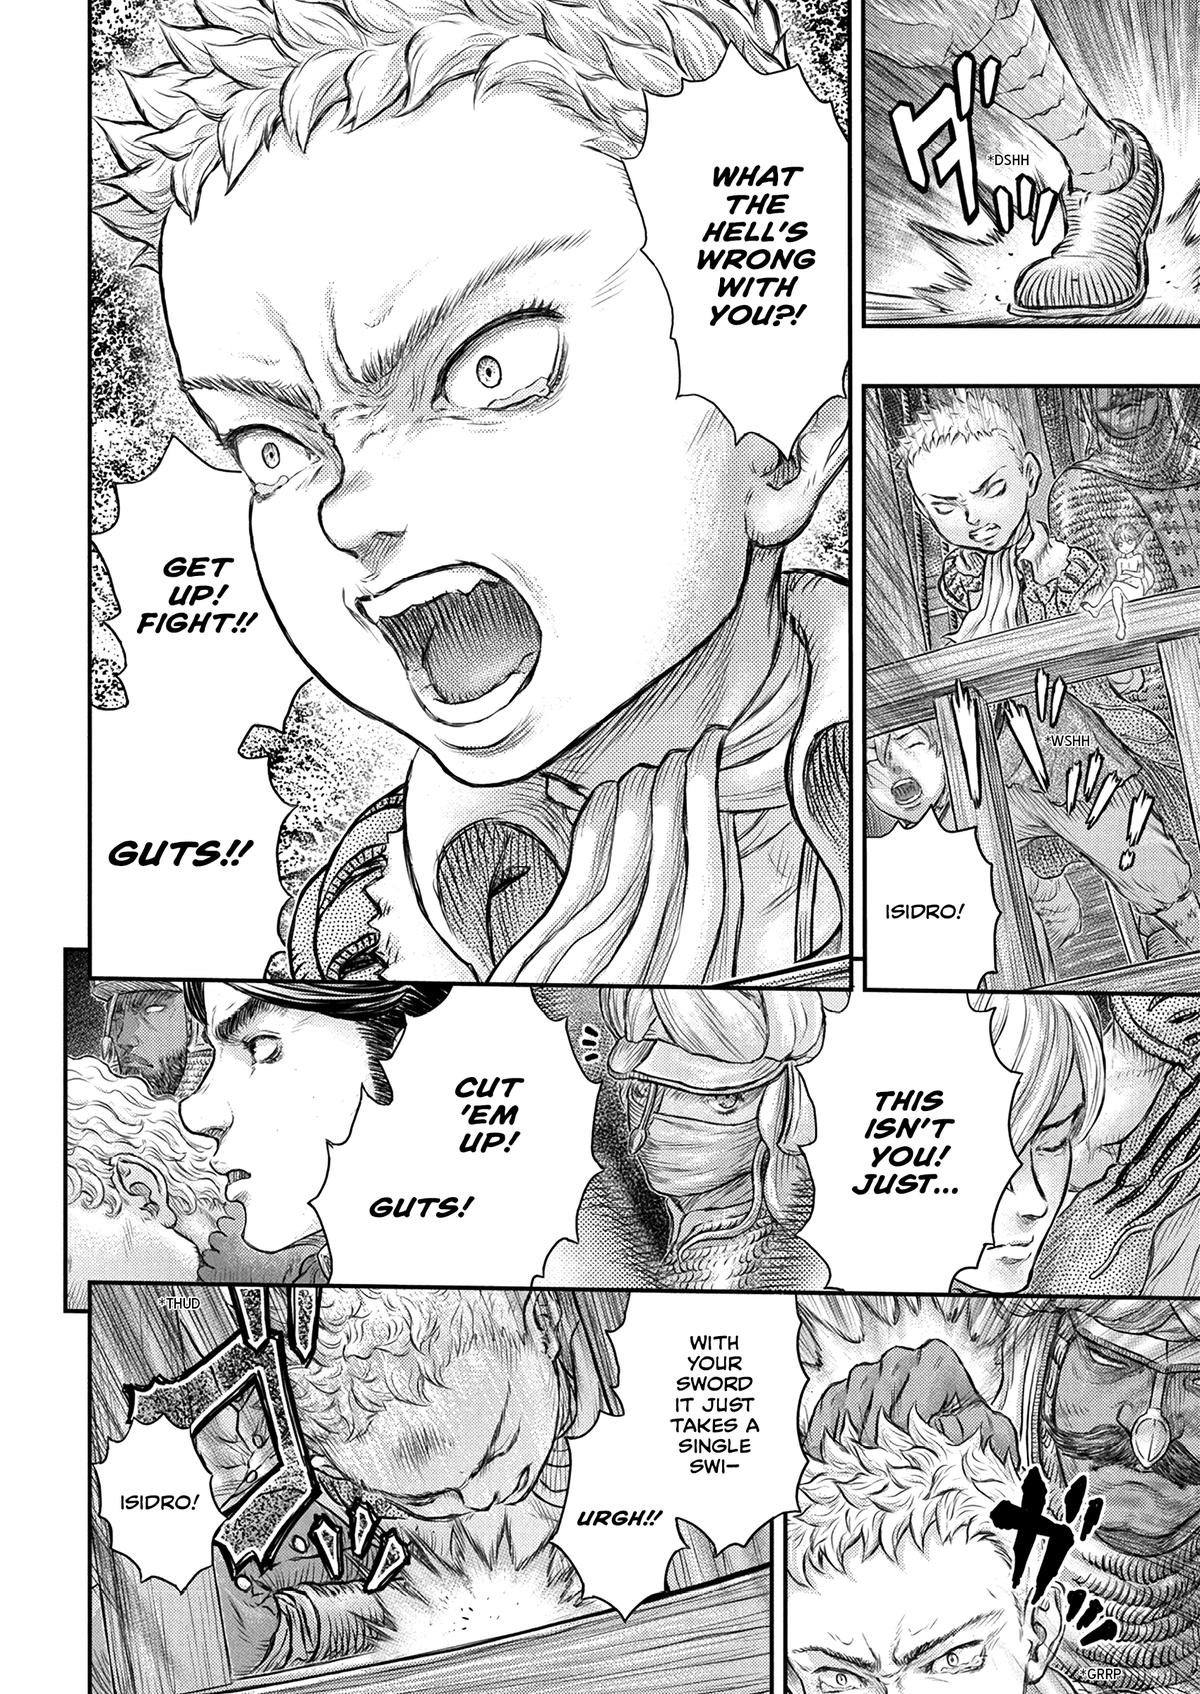 Berserk Manga Chapter 375 image 12